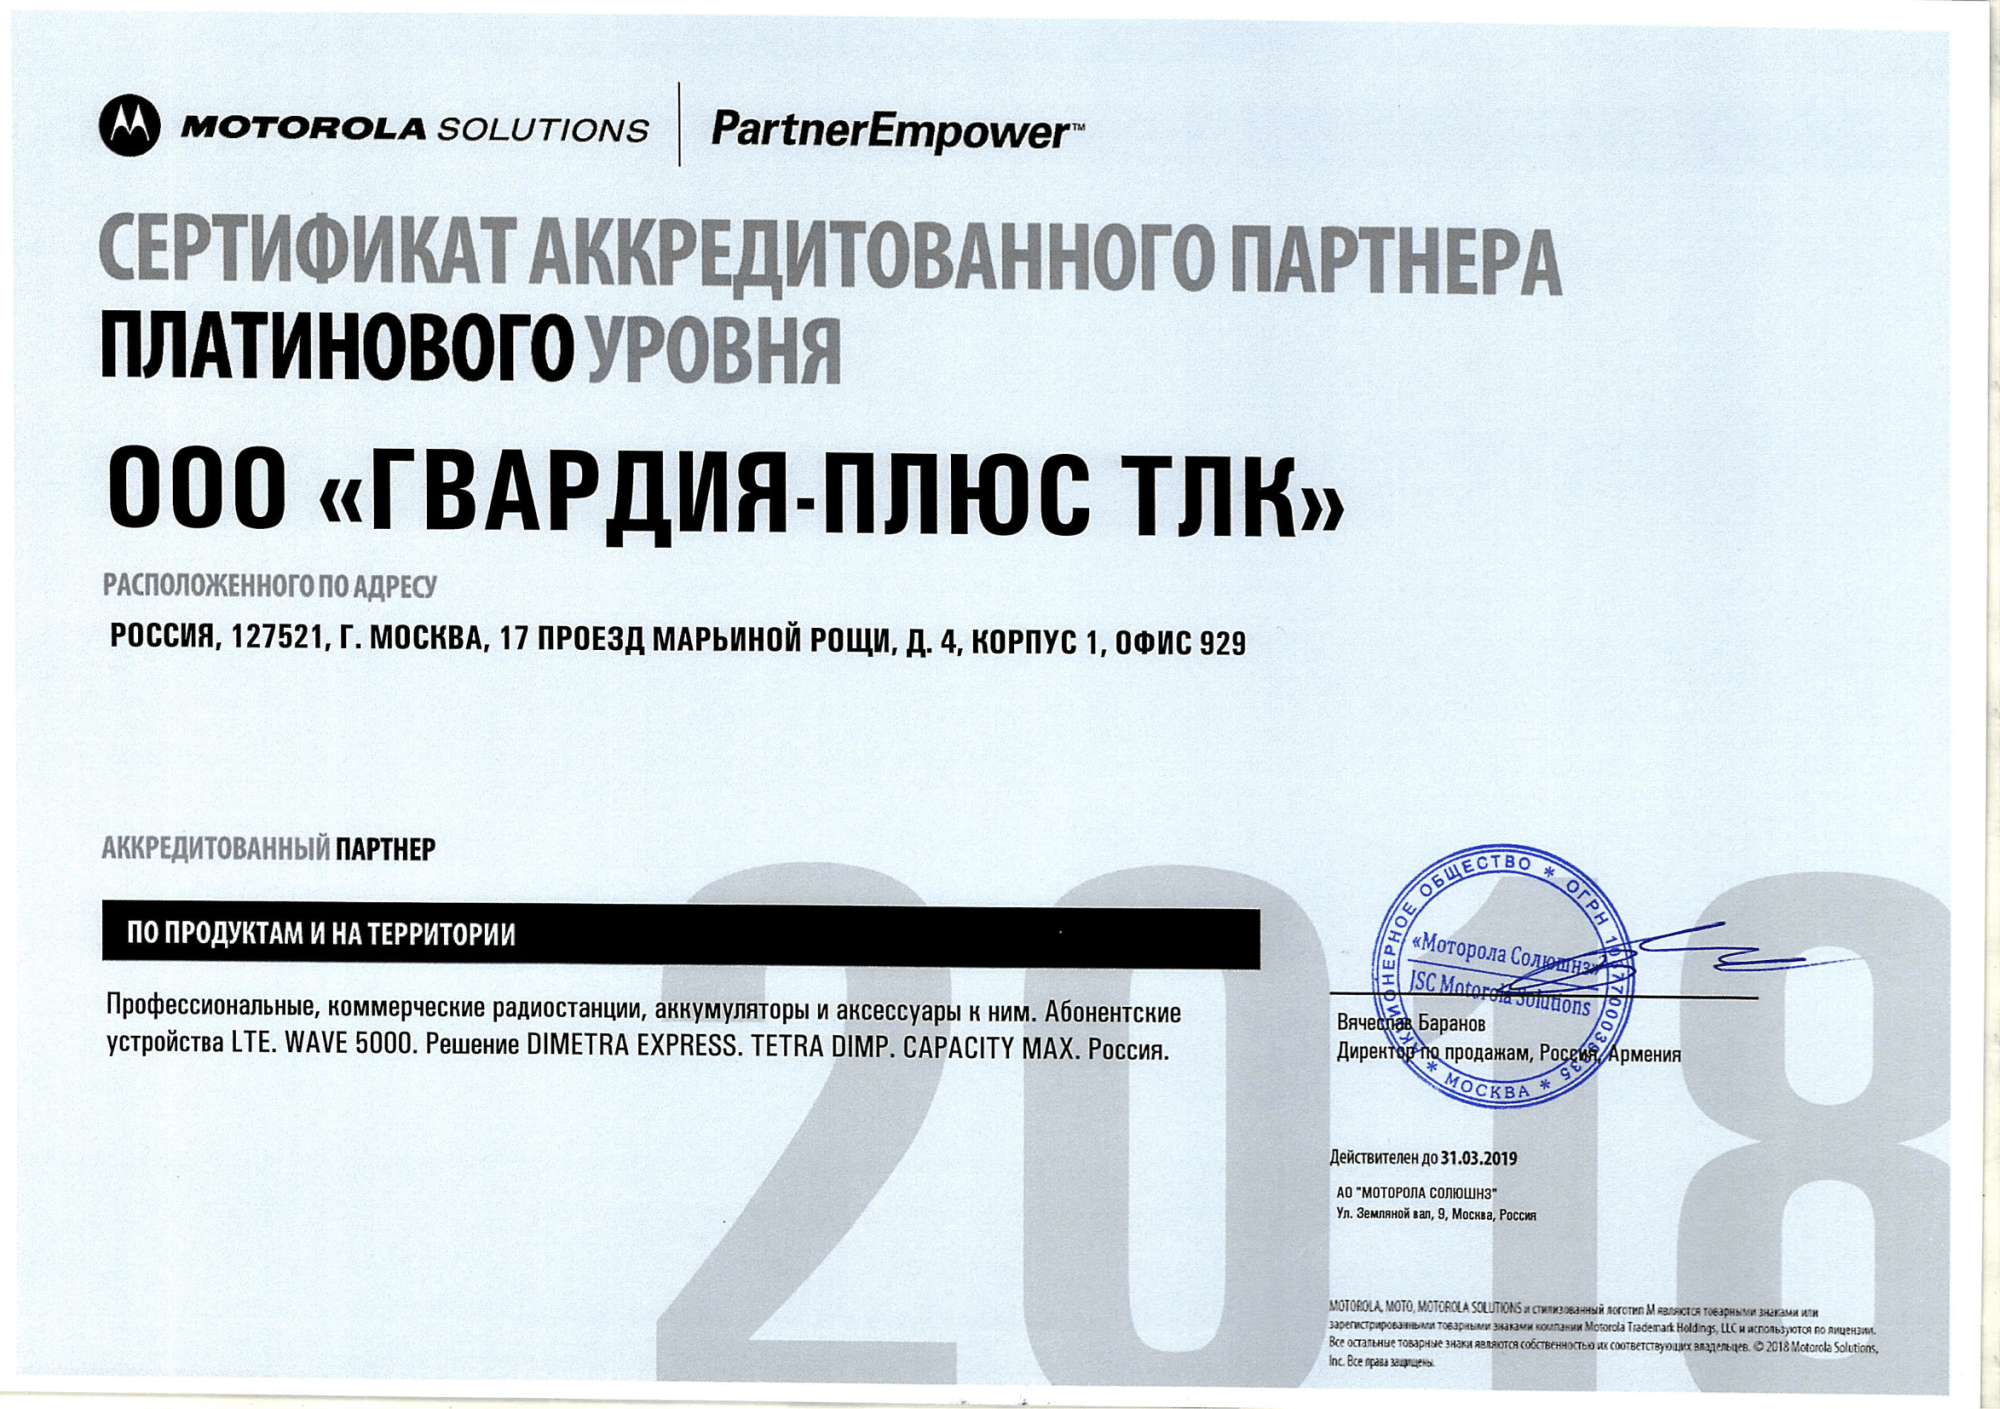 Сертификат аккредитованного партнера